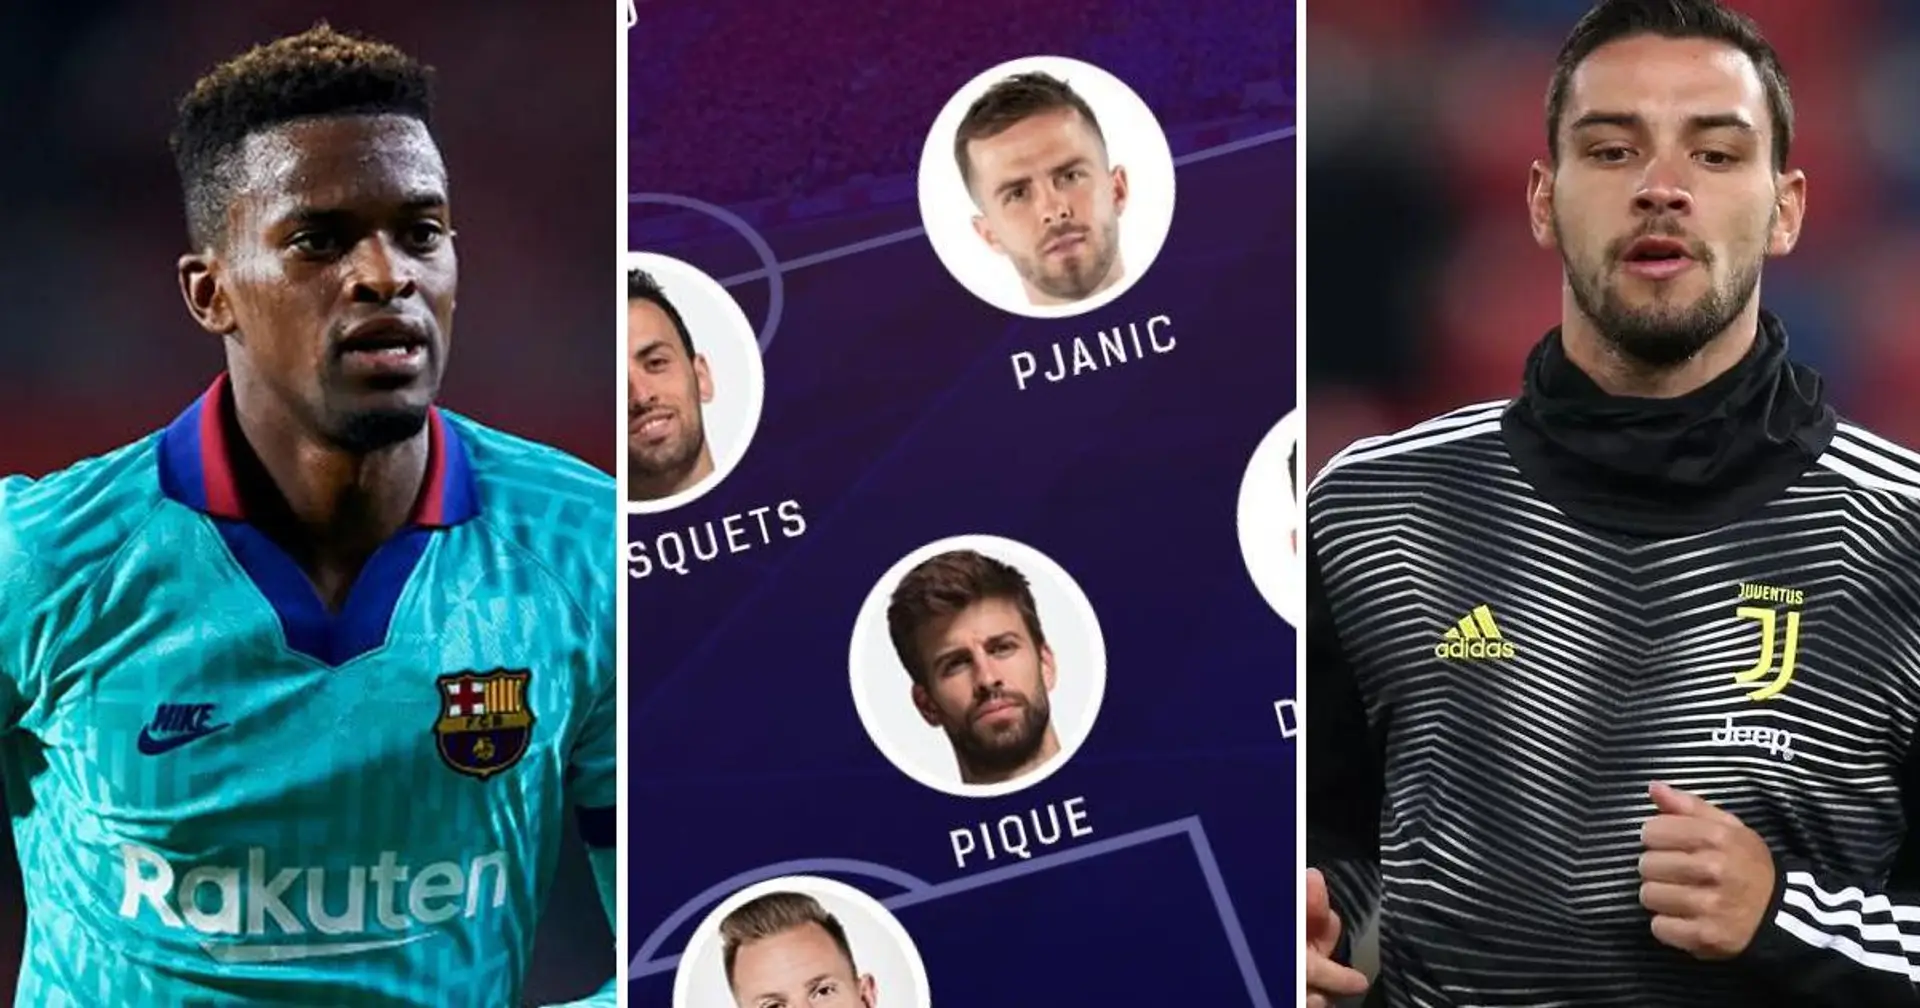 Asalto de la Serie A: XI del Barça si se cumplen los rumores